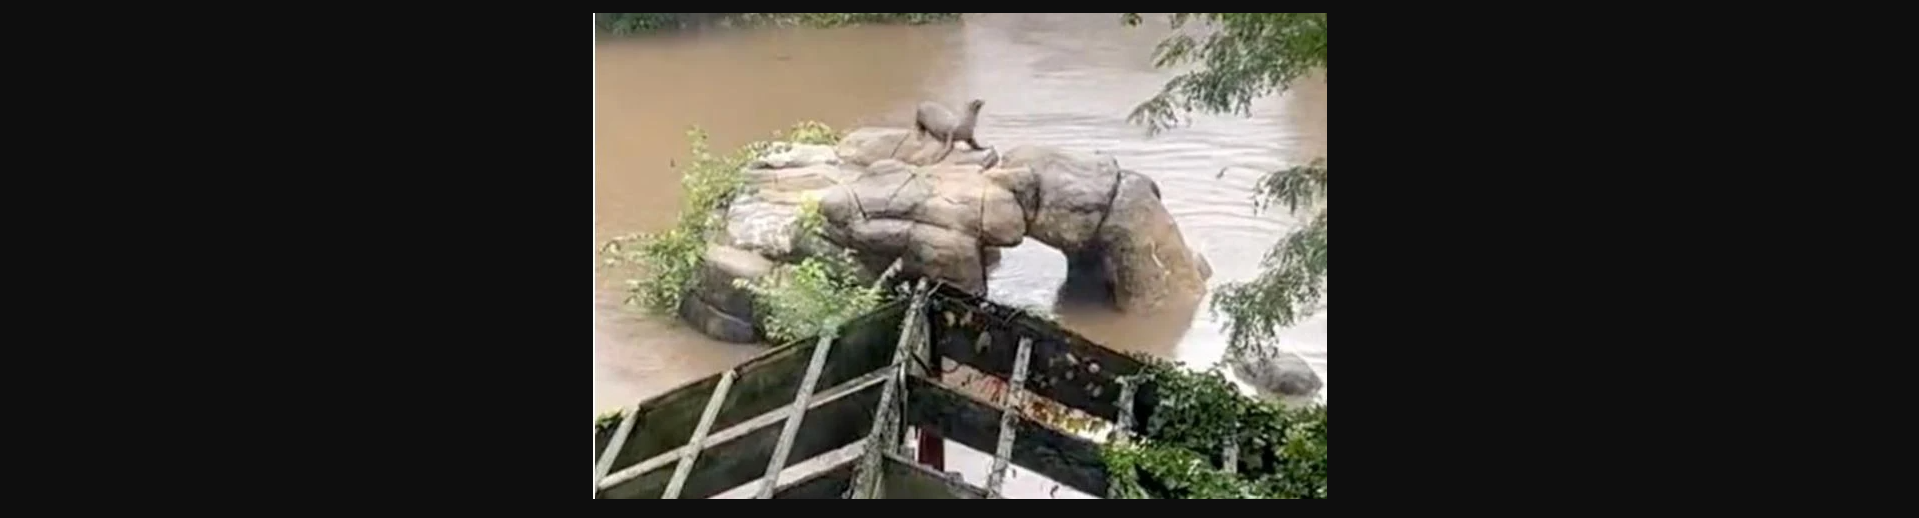 Πλημμύρες στην Νέα Υόρκη: Θαλάσσιο λιοντάρι δραπέτευσε από τον περίβολο ζωολογικού κήπου (βίντεο)